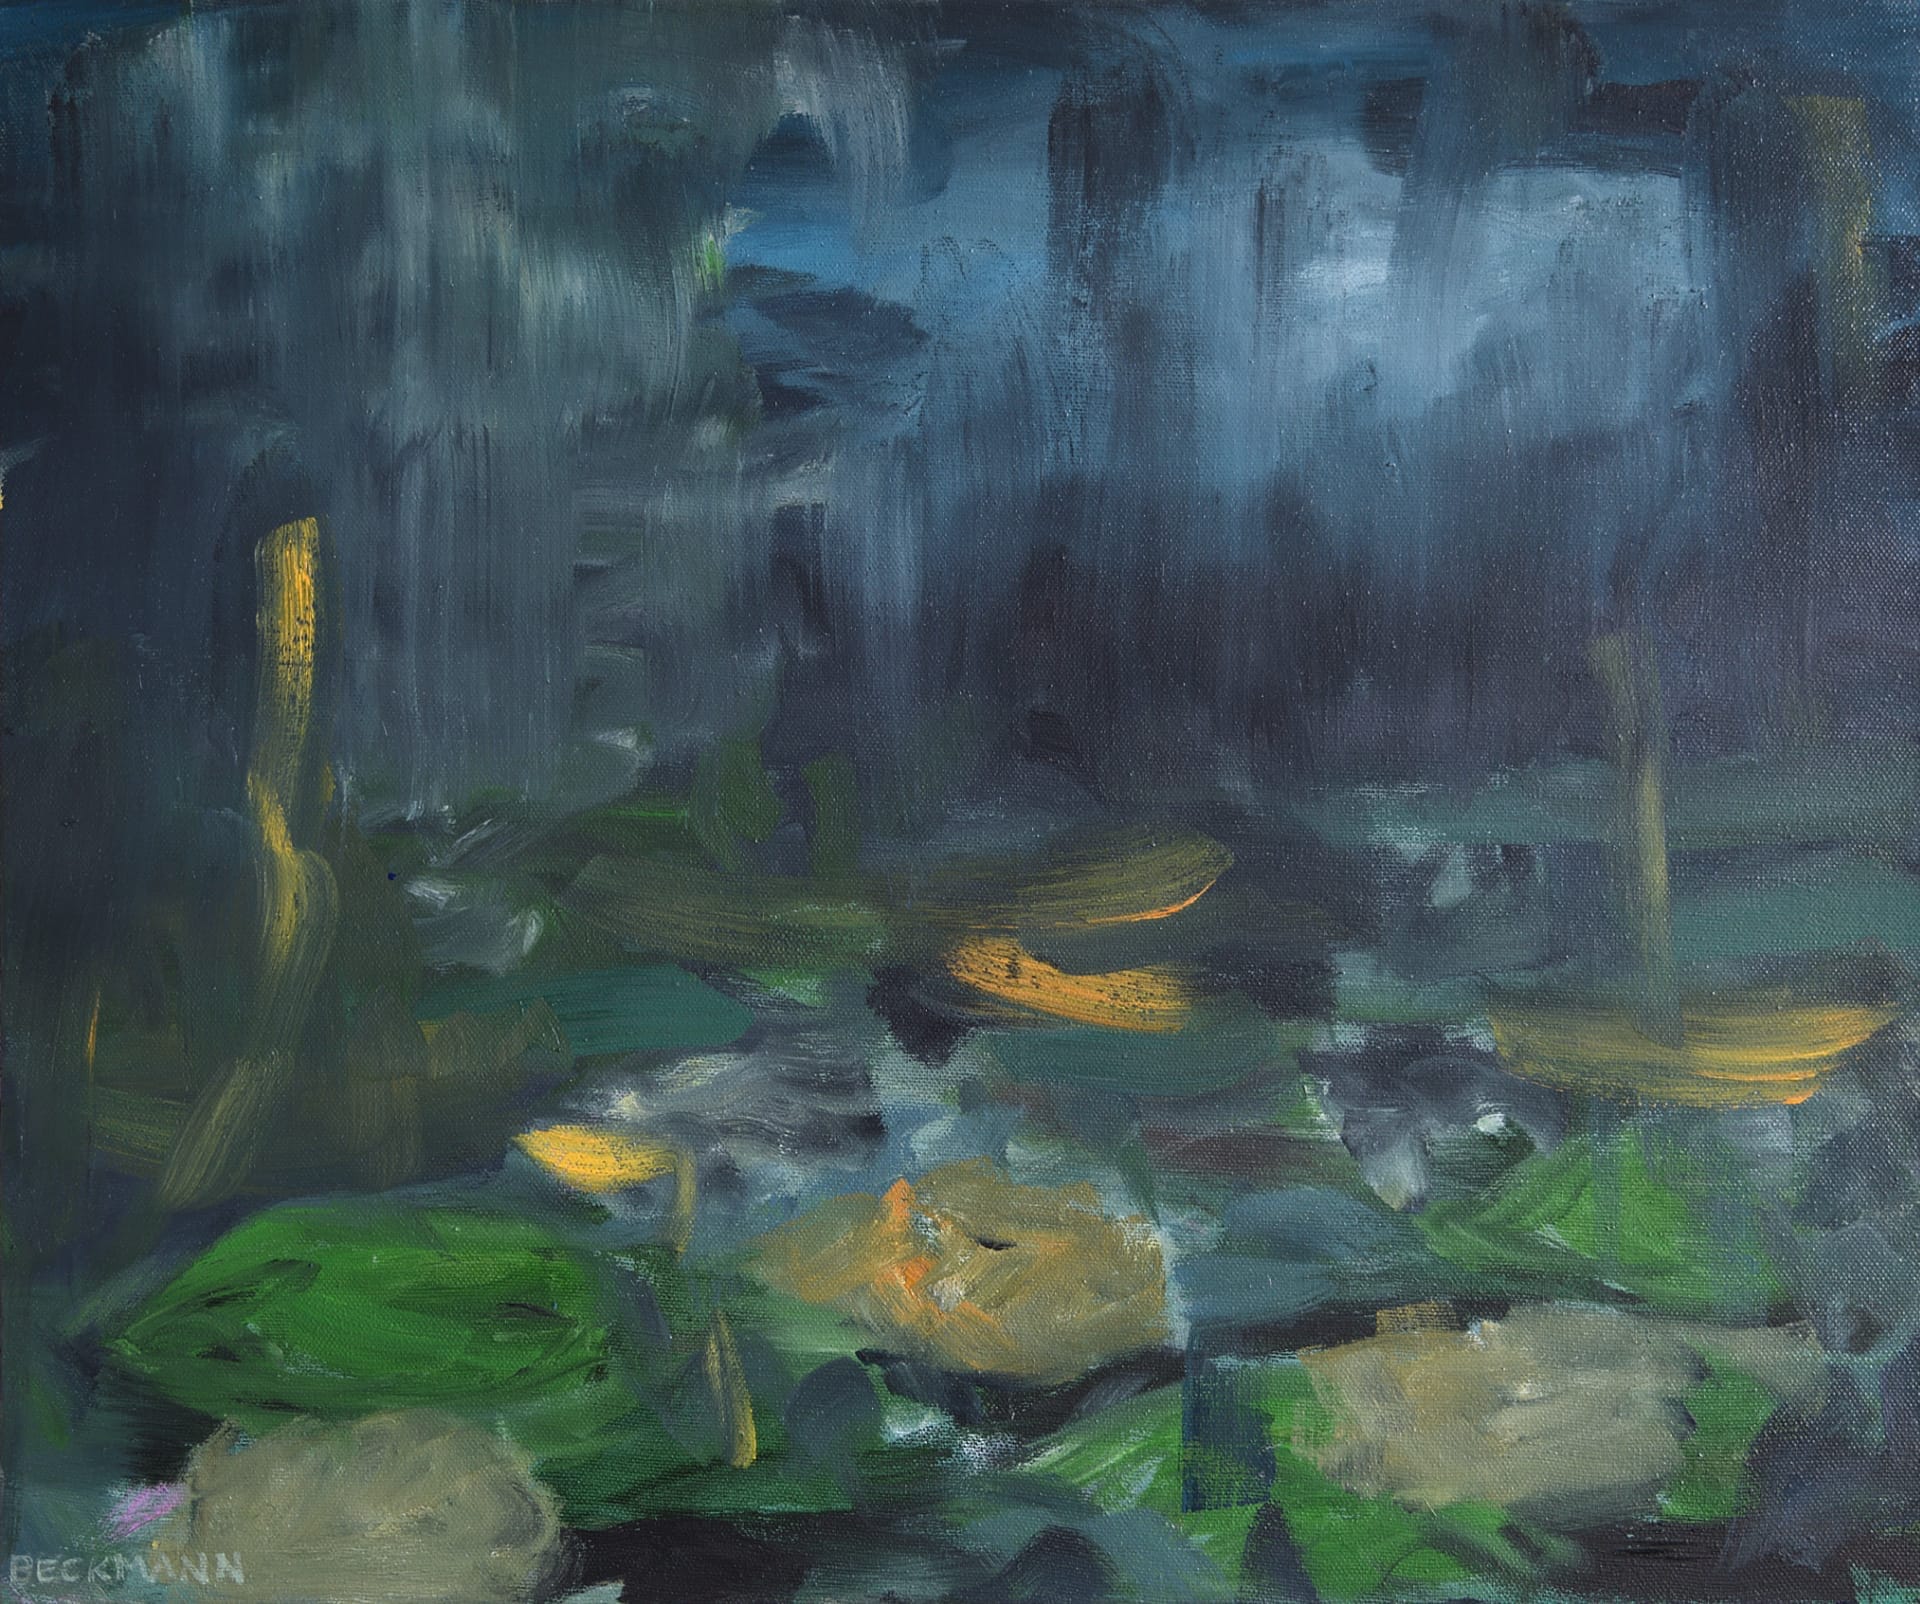 Sabine Beckmann, Golden Rain, 46 x 55 cm, oil on linen, 2020